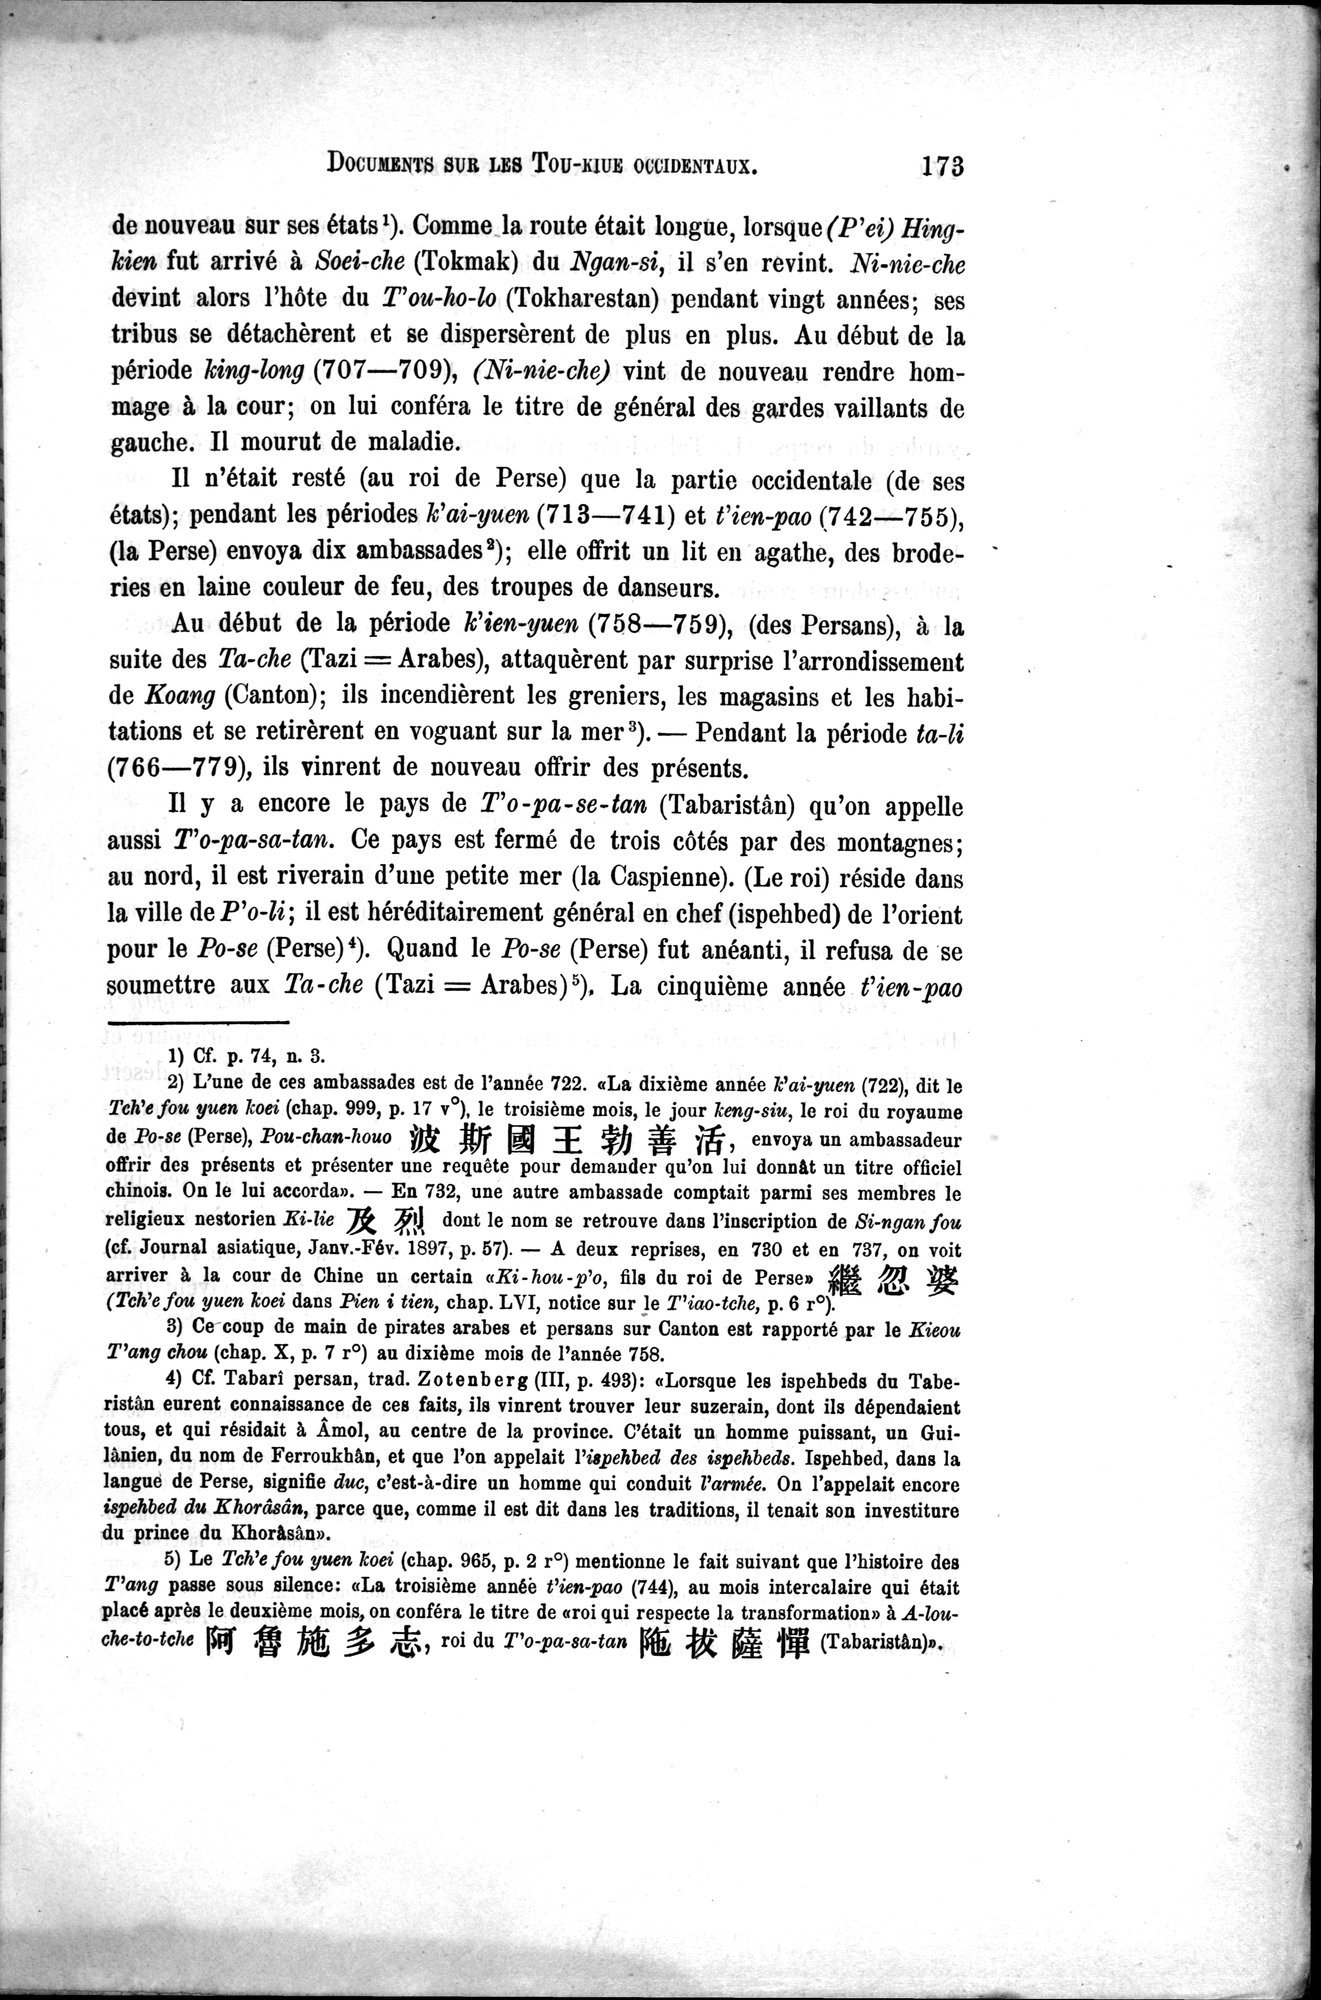 Documents sur les Tou-kiue (Turcs) occidentaux : vol.1 / Page 183 (Grayscale High Resolution Image)